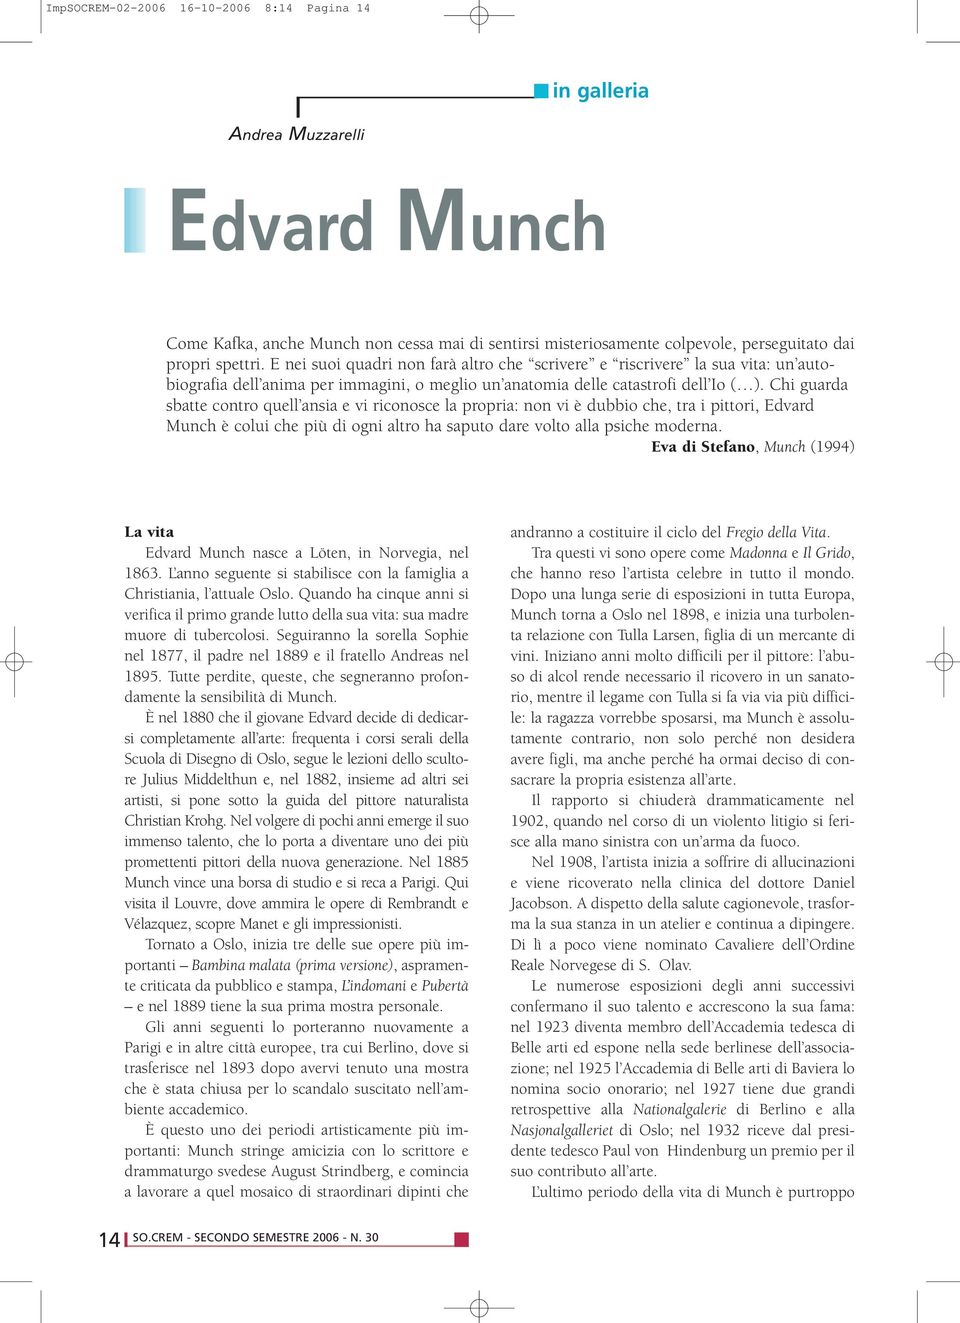 Chi guarda sbatte contro quell ansia e vi riconosce la propria: non vi è dubbio che, tra i pittori, Edvard Munch è colui che più di ogni altro ha saputo dare volto alla psiche moderna.